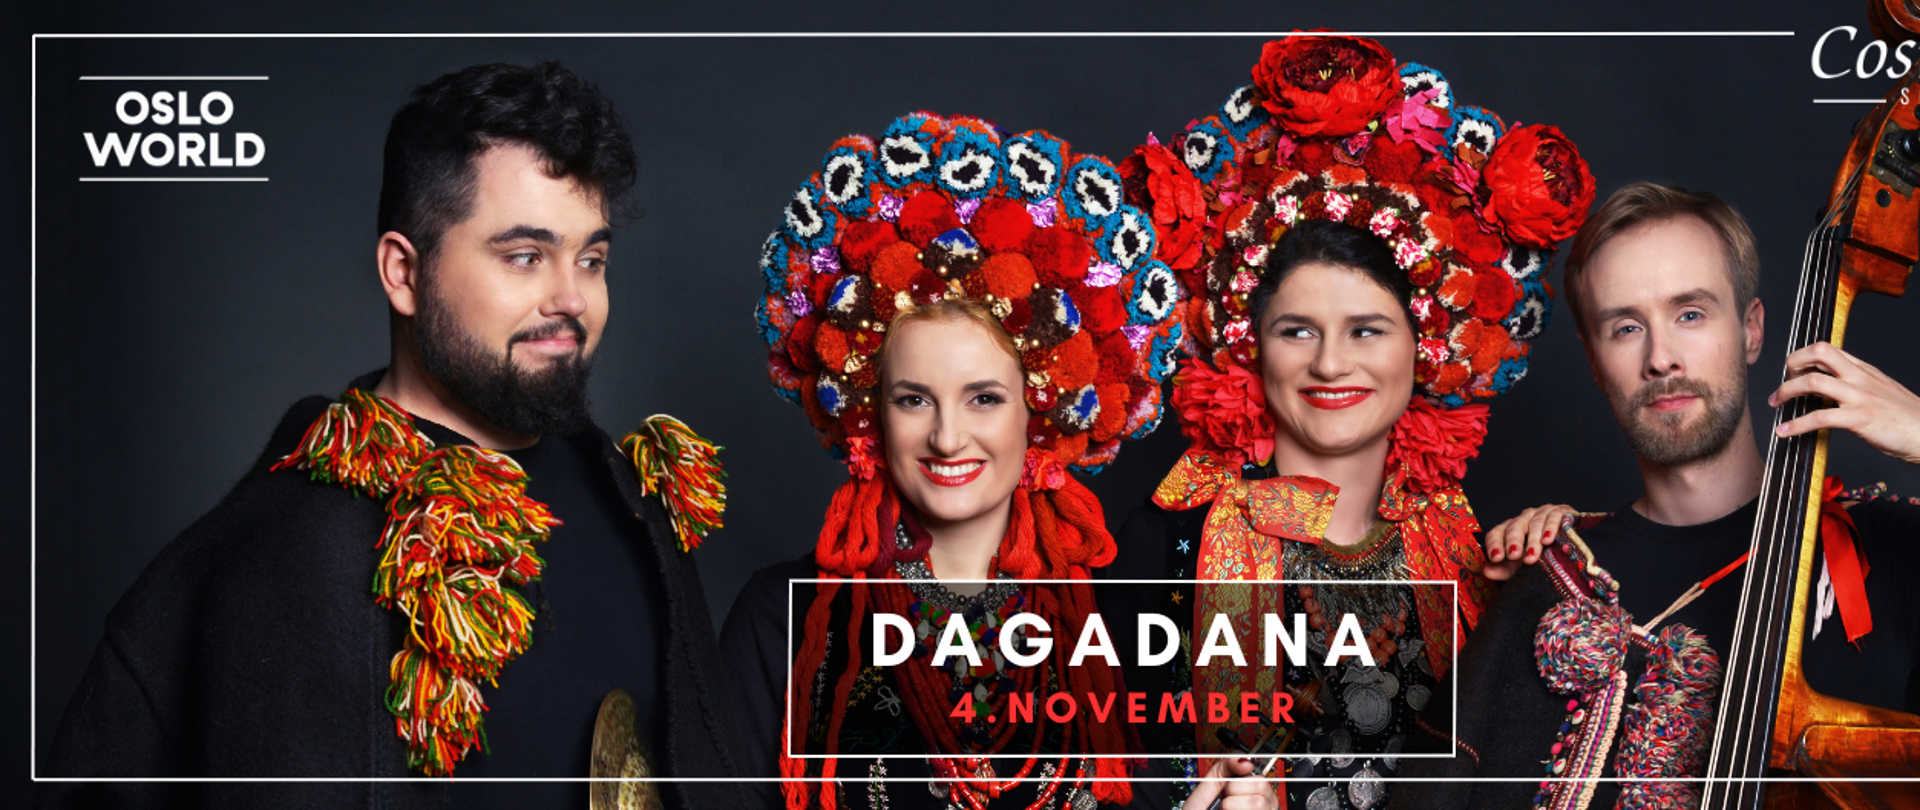 Dagadana's concert